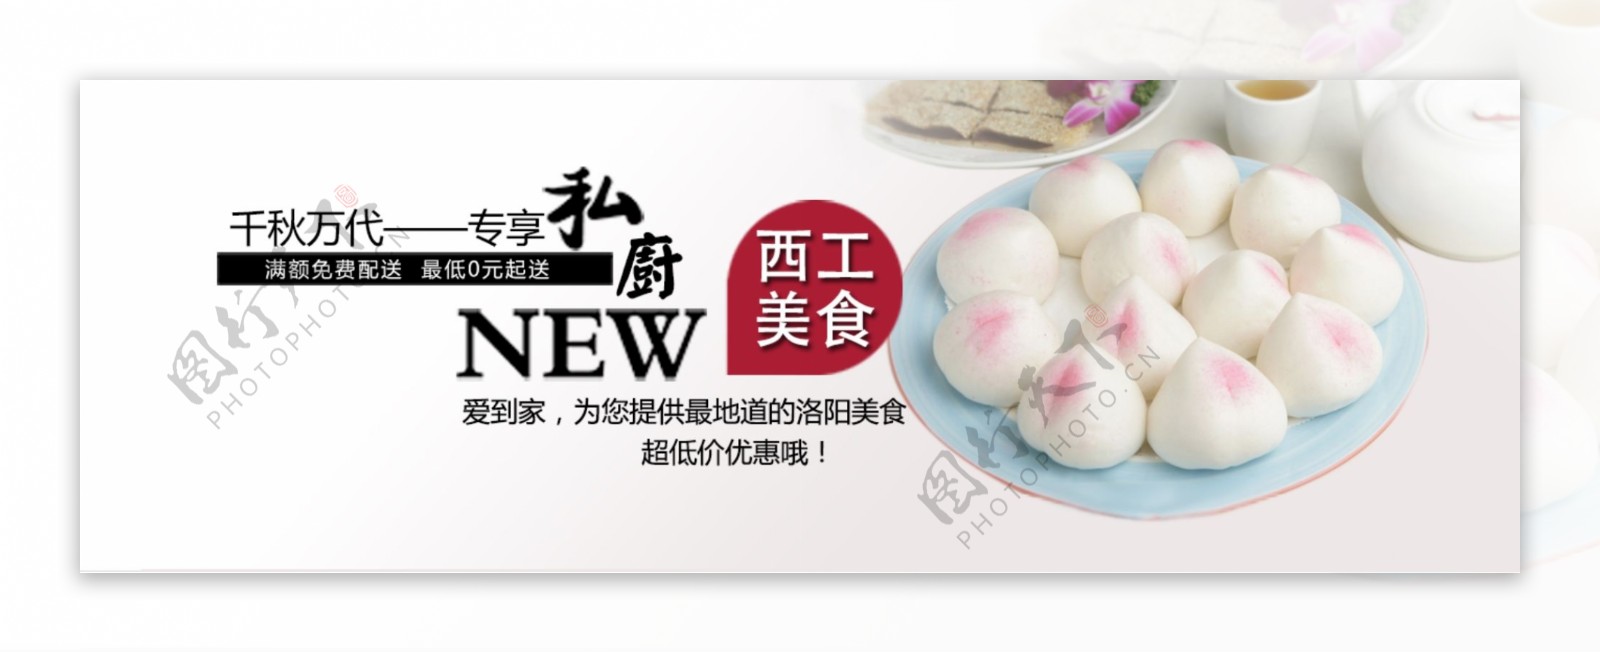 高清传统寿桃面点餐饮海报PSD下载